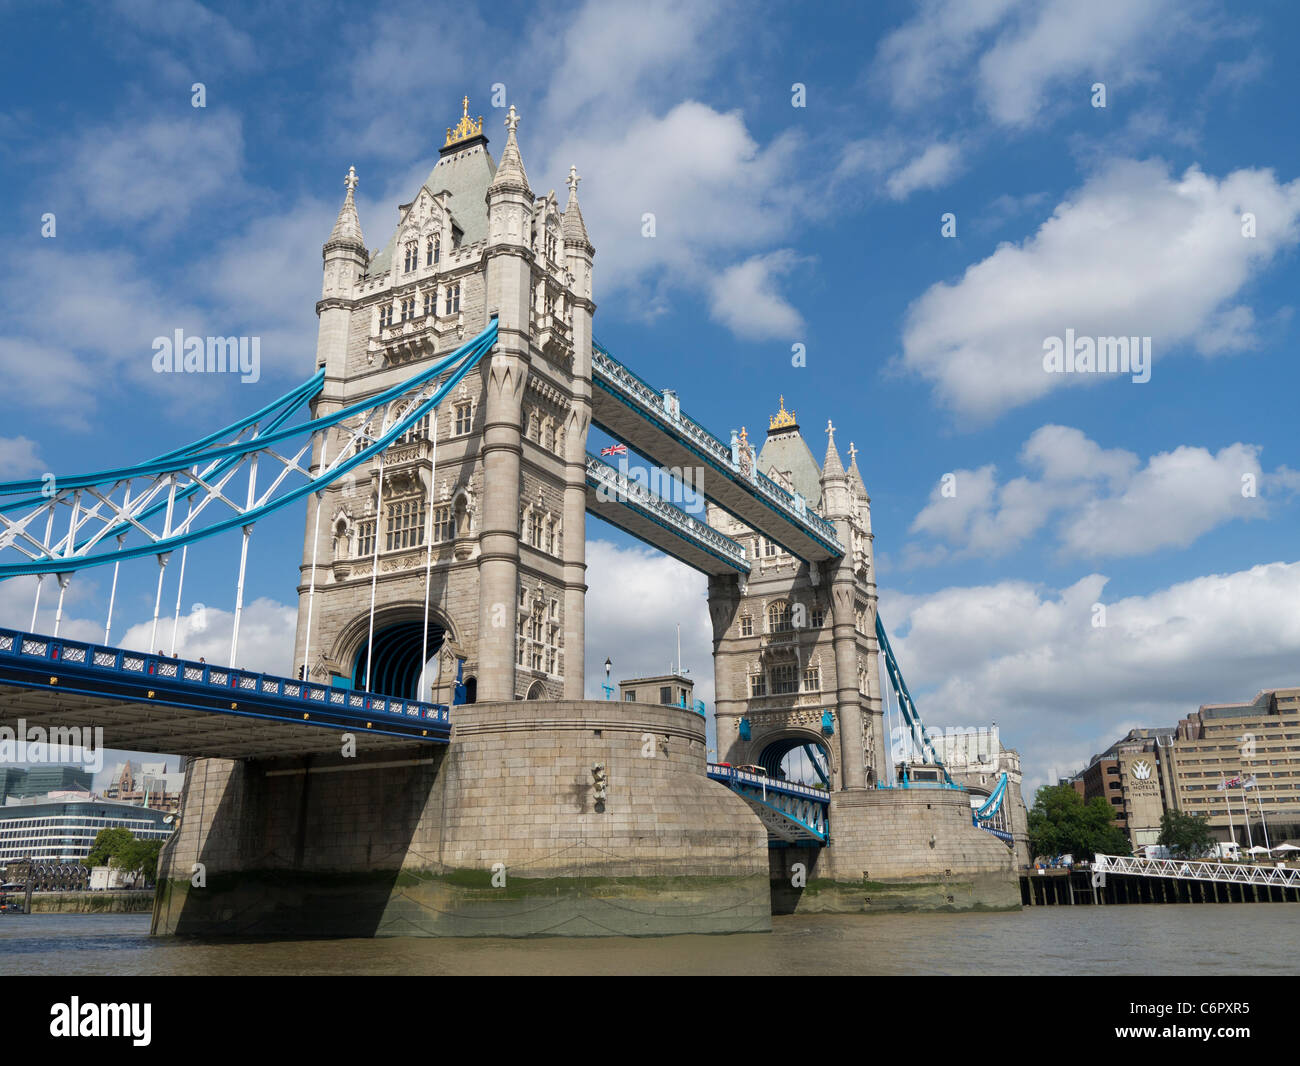 Tower Bridge, attraction touristique historique, Tamise London England UK. Banque D'Images